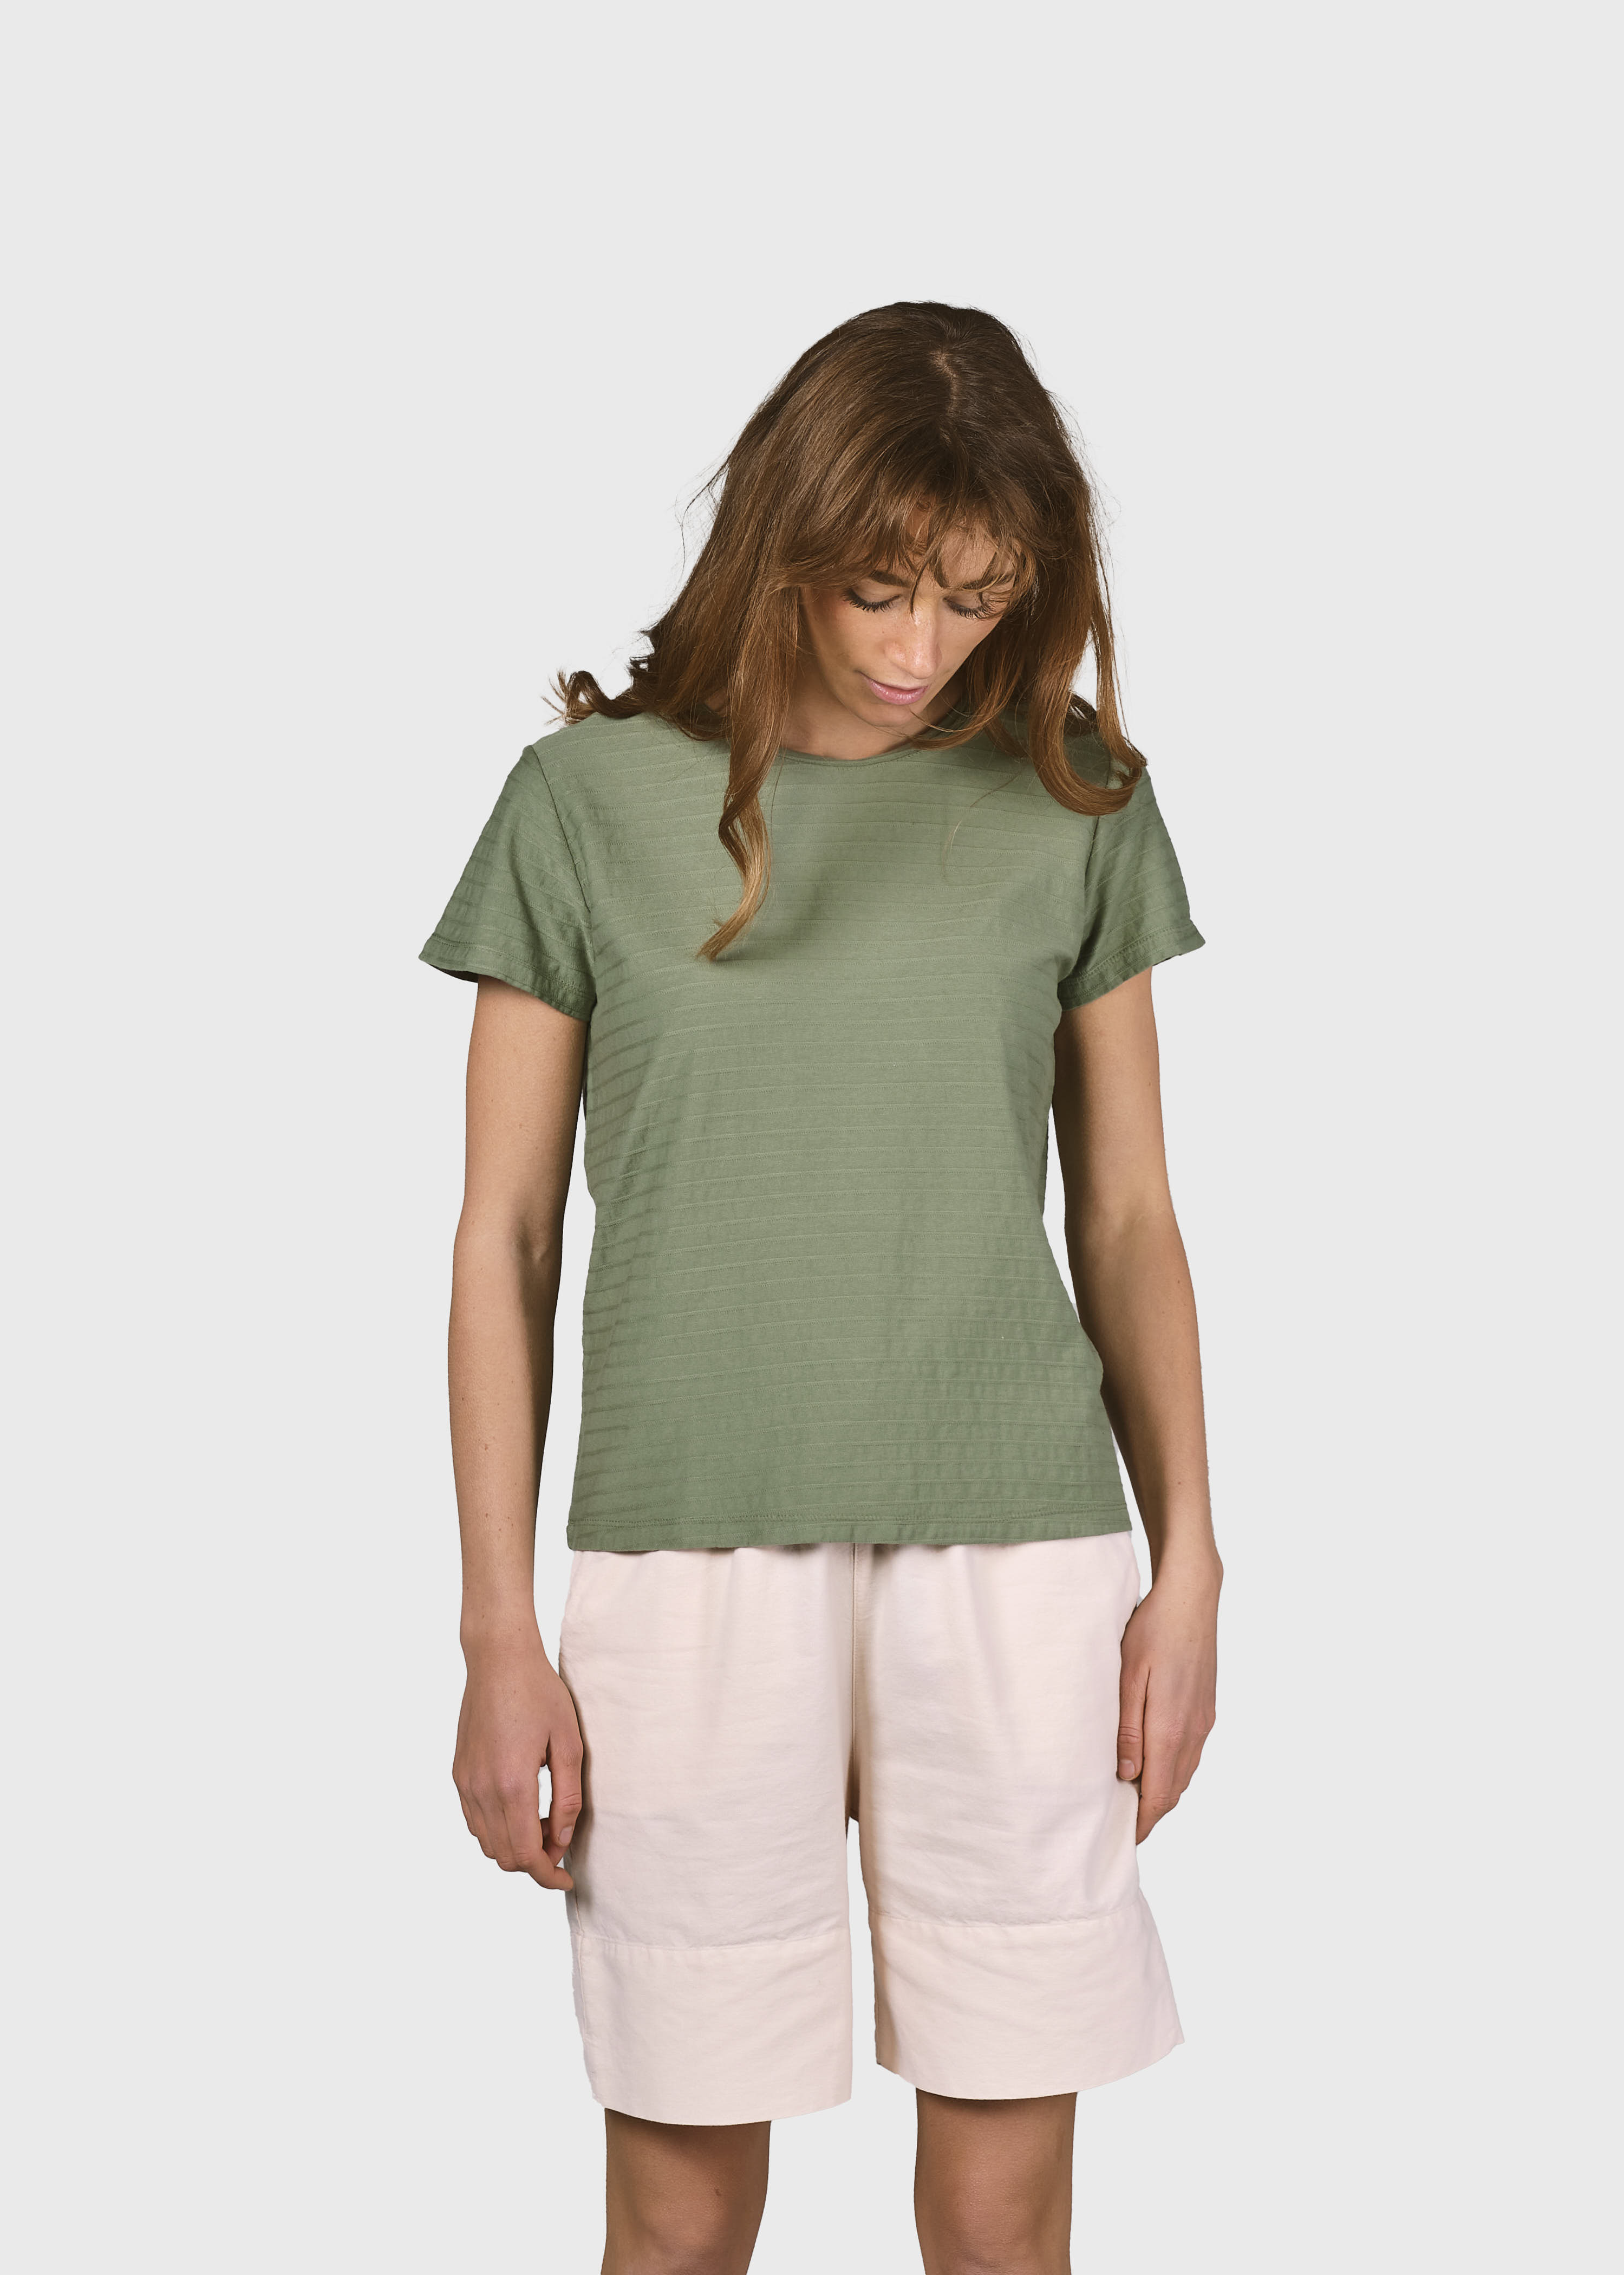 Strukturiertes T-Shirt My tee Pale green